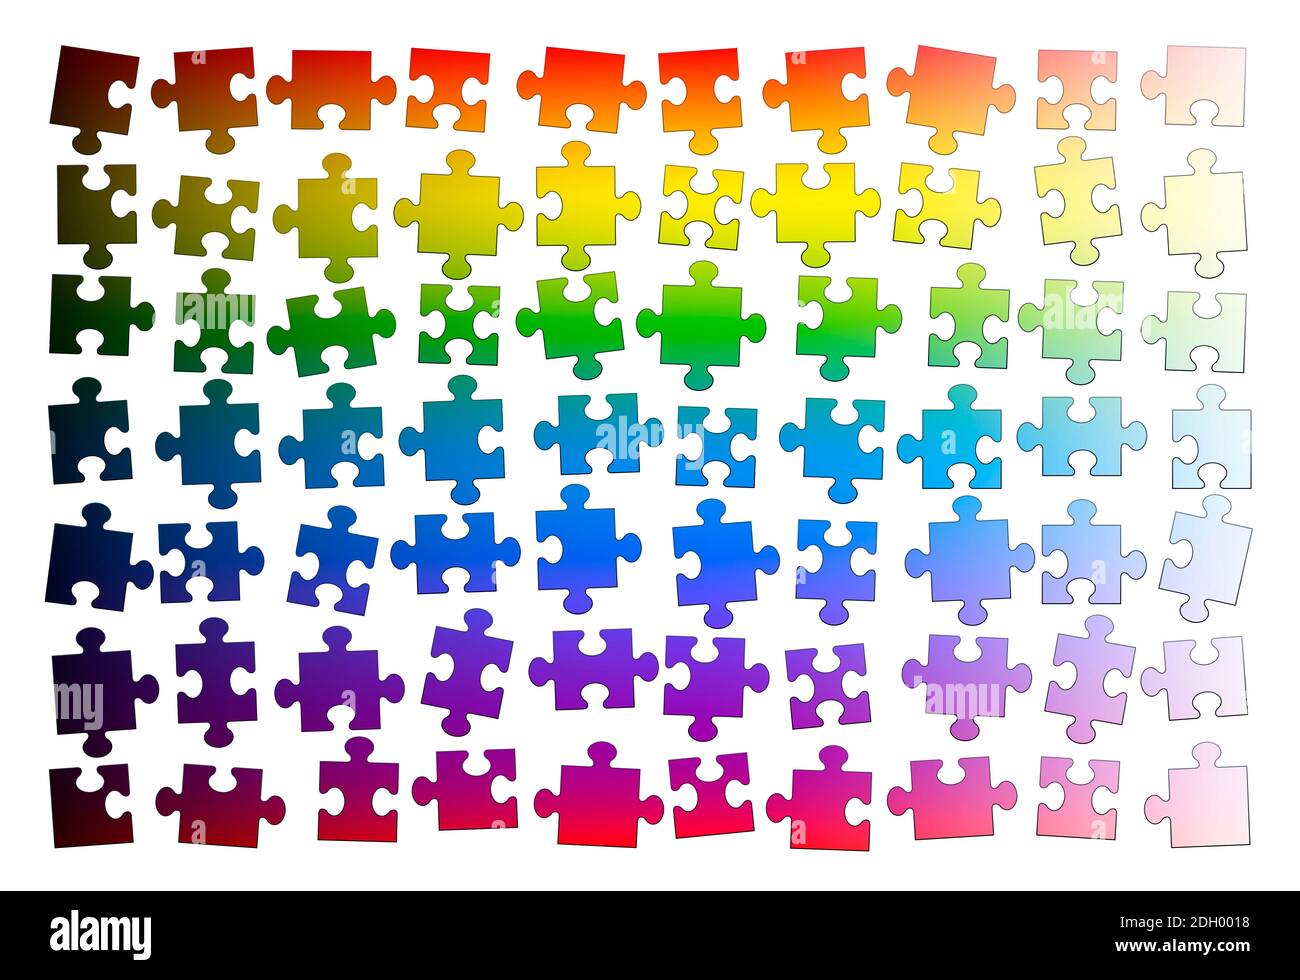 Pezzi di puzzle. Pezzi di puzzle assortiti di colore iridato gradiente, ma non ancora messi insieme - illustrazione su sfondo bianco. Foto Stock